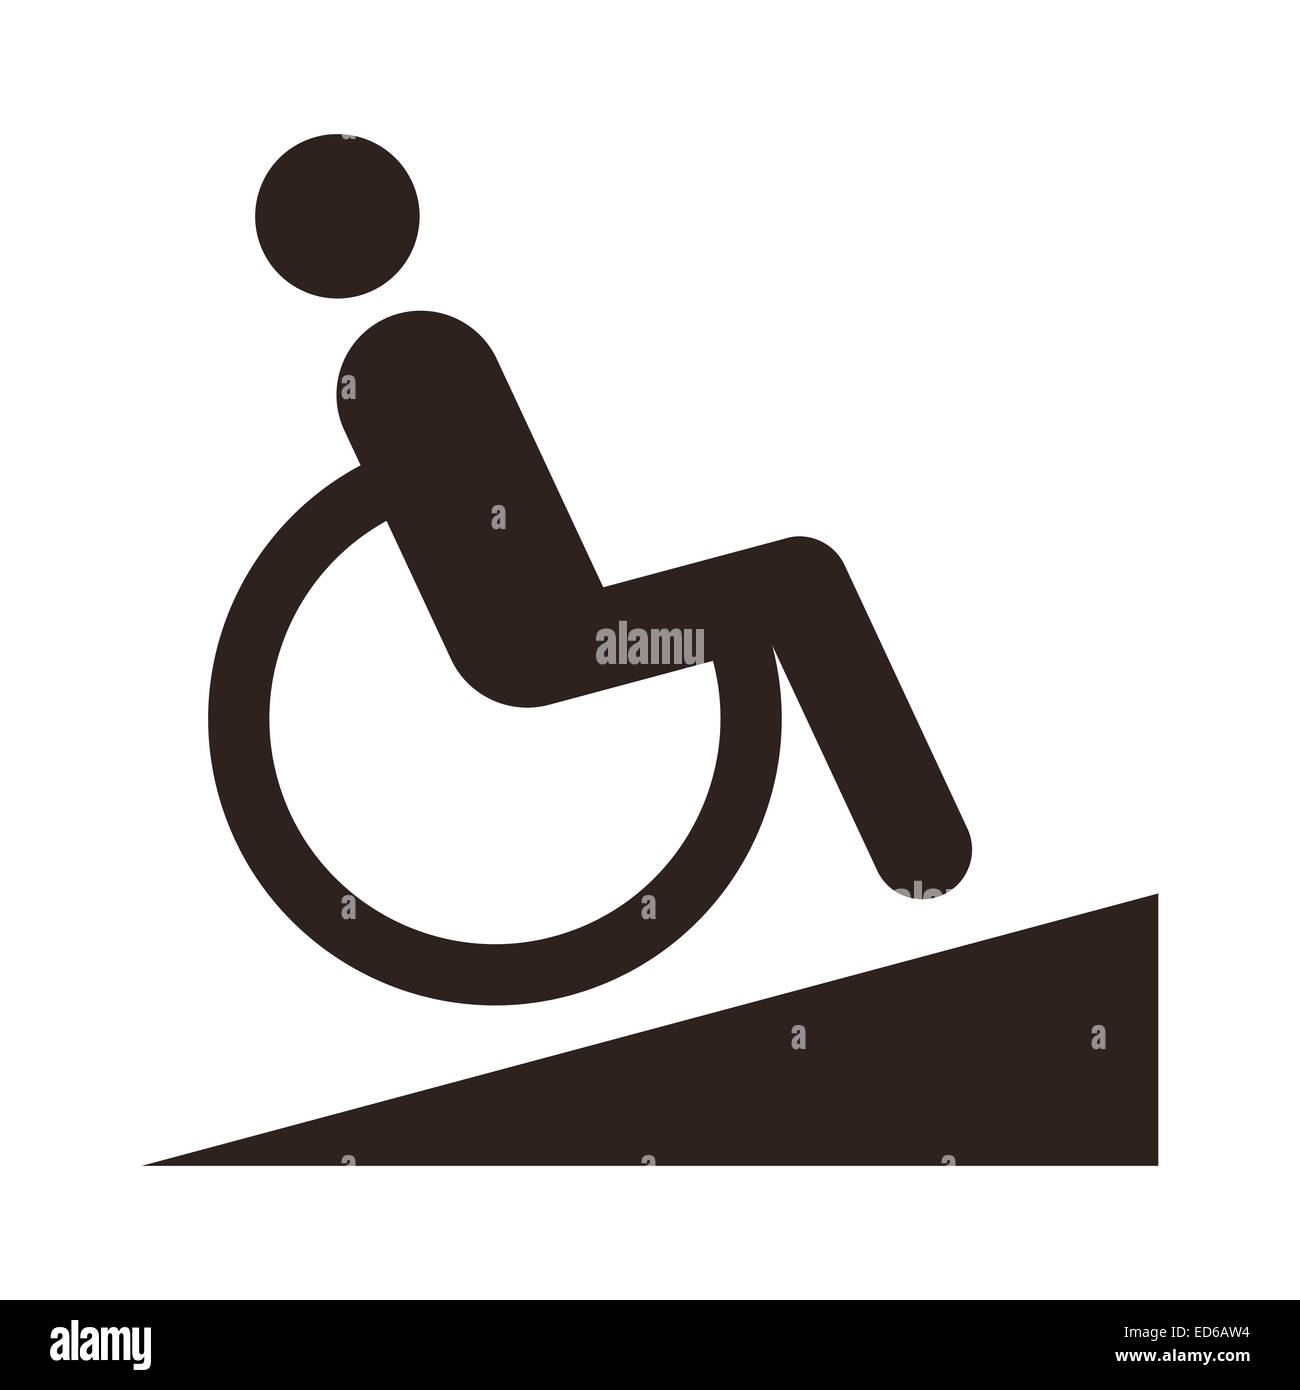 Accesso disabili - Strutture per disabili isolato su sfondo bianco Foto Stock